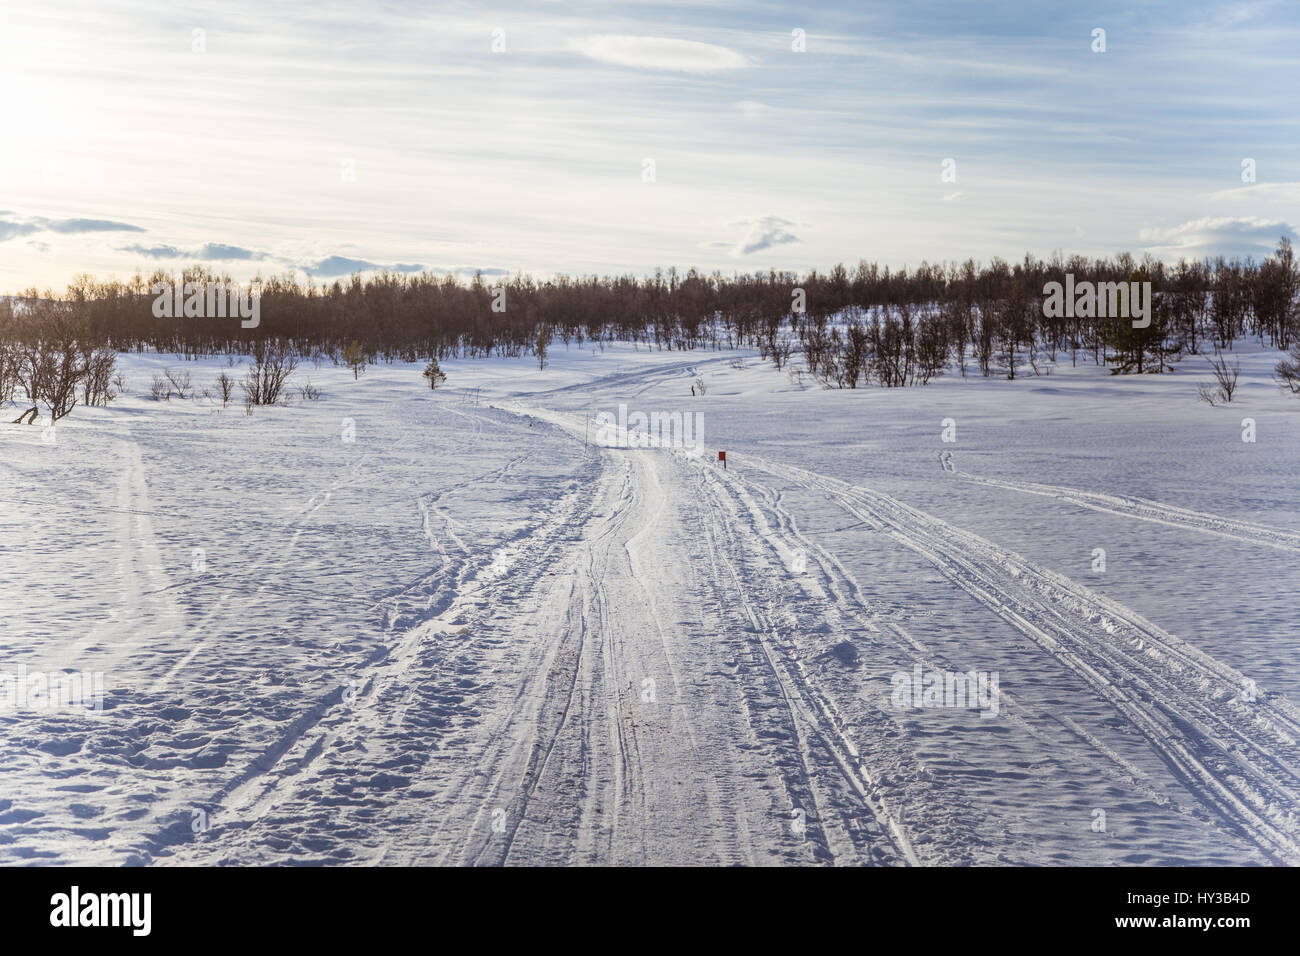 Eine schöne weiße Landschaft von einem verschneiten norwegischen Wintertag mit Tracks für Motorschlitten oder Hundeschlitten Stockfoto